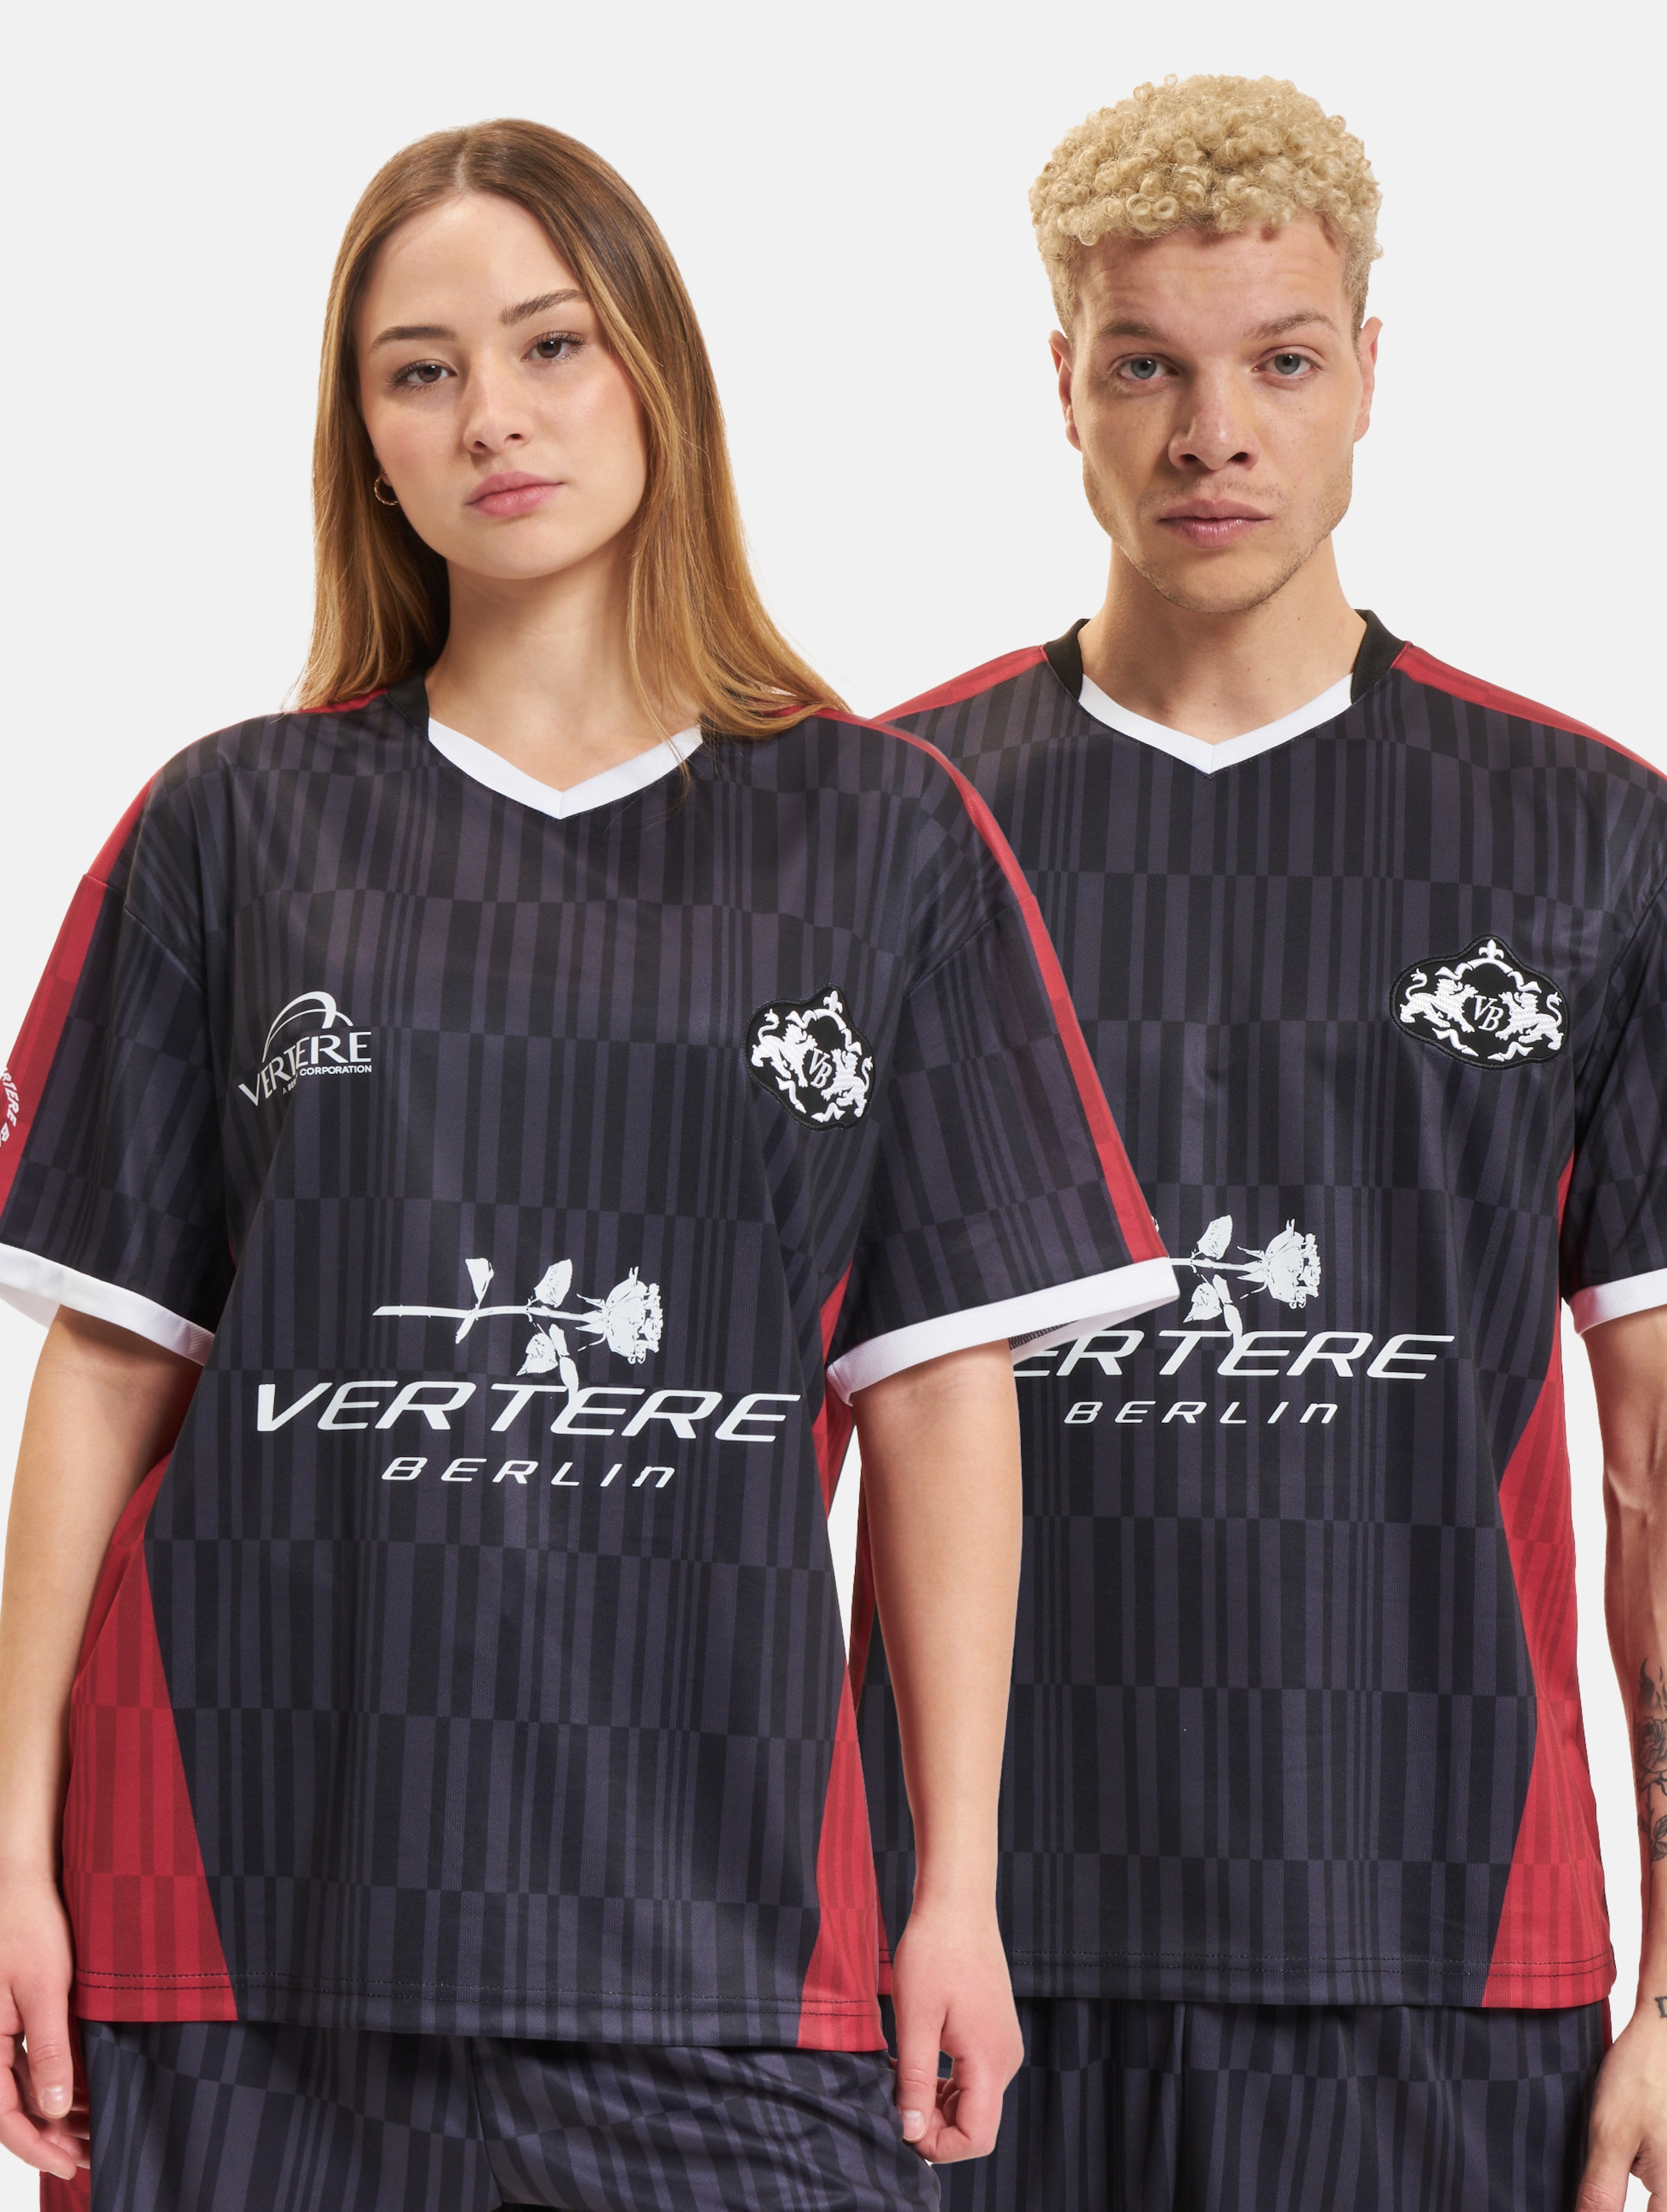 Vertere Berlin Soccer T-Shirt Frauen,Männer,Unisex op kleur rood, Maat M